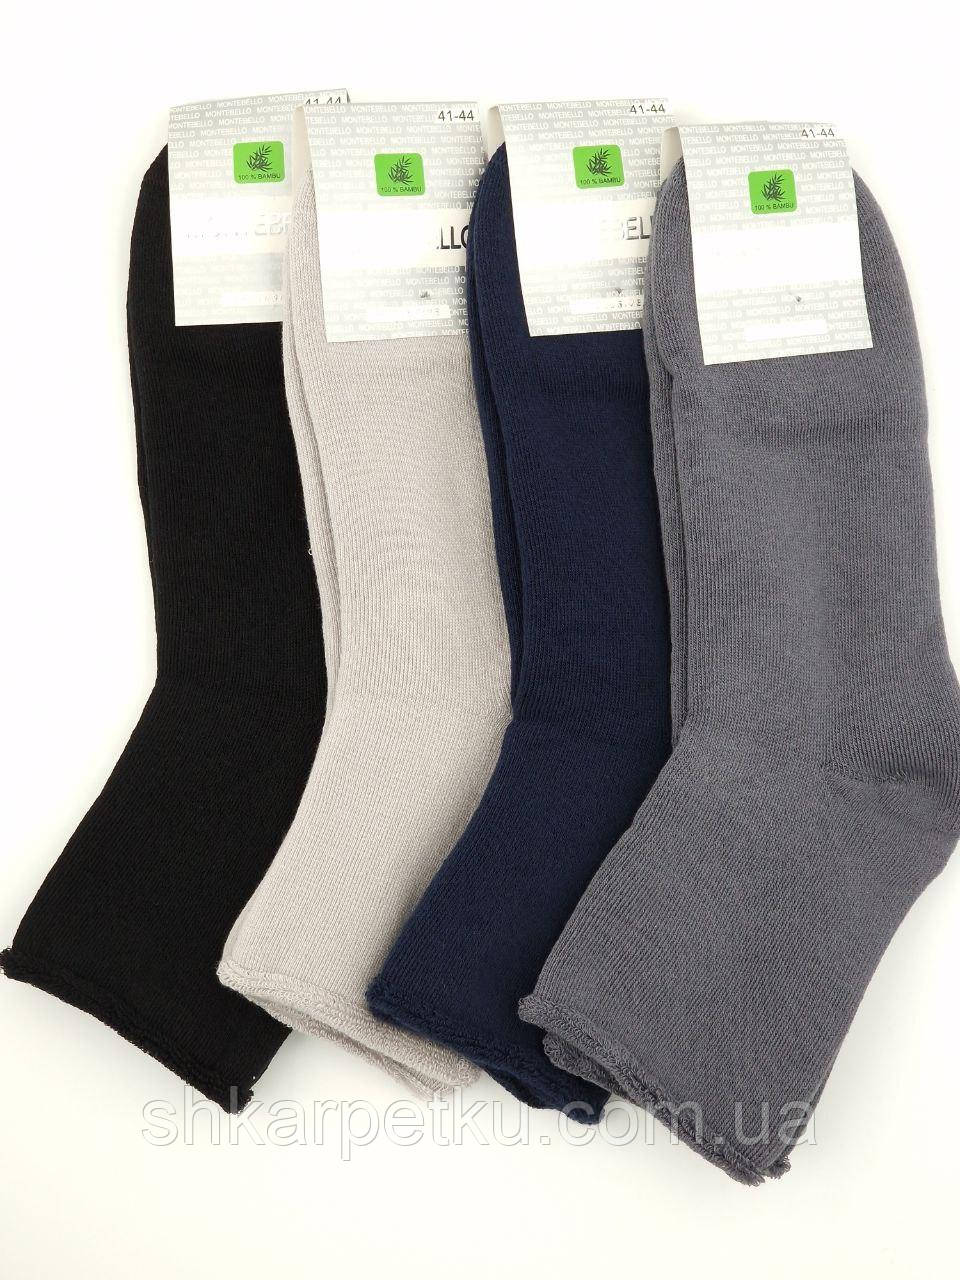 Чоловічі зимові шкарпетки махрові без резинки стильні якісні Montebello розмір 41-44, 12 пар\уп. аассорти